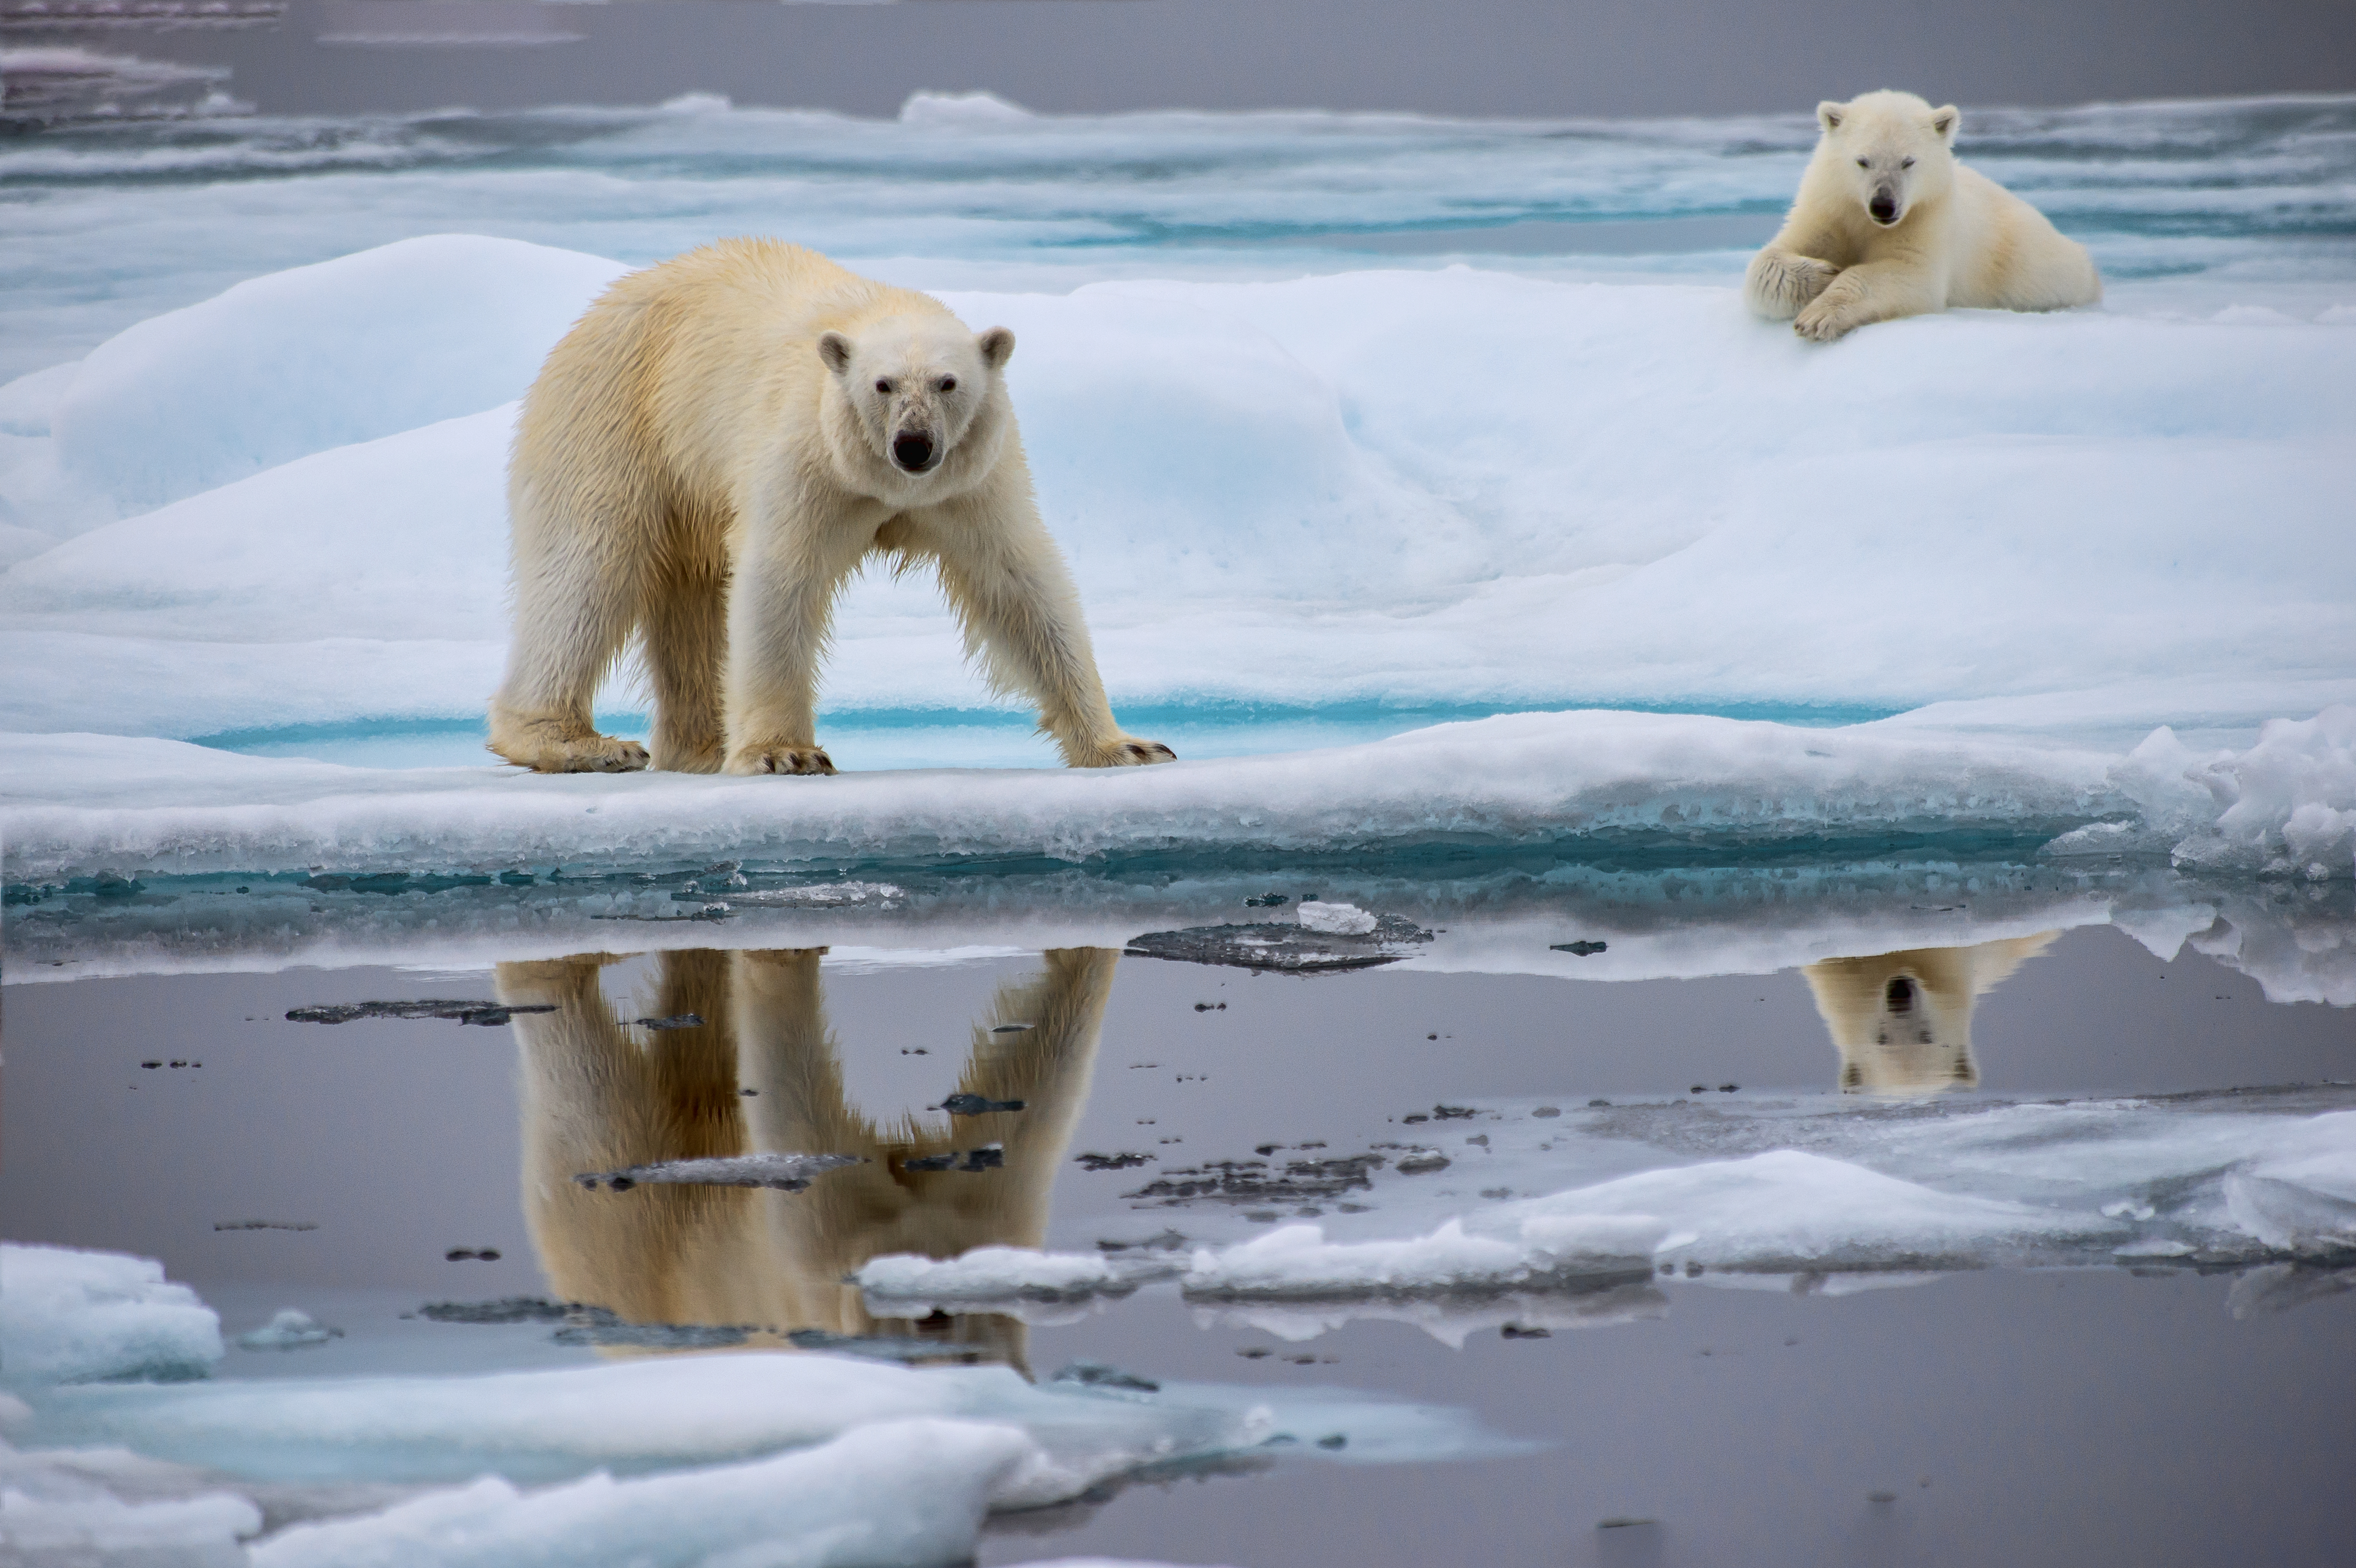 Los osos polares pueden utilizar piedras o bloques de hielo para matar  morsas, revela estudio - National Geographic en Español